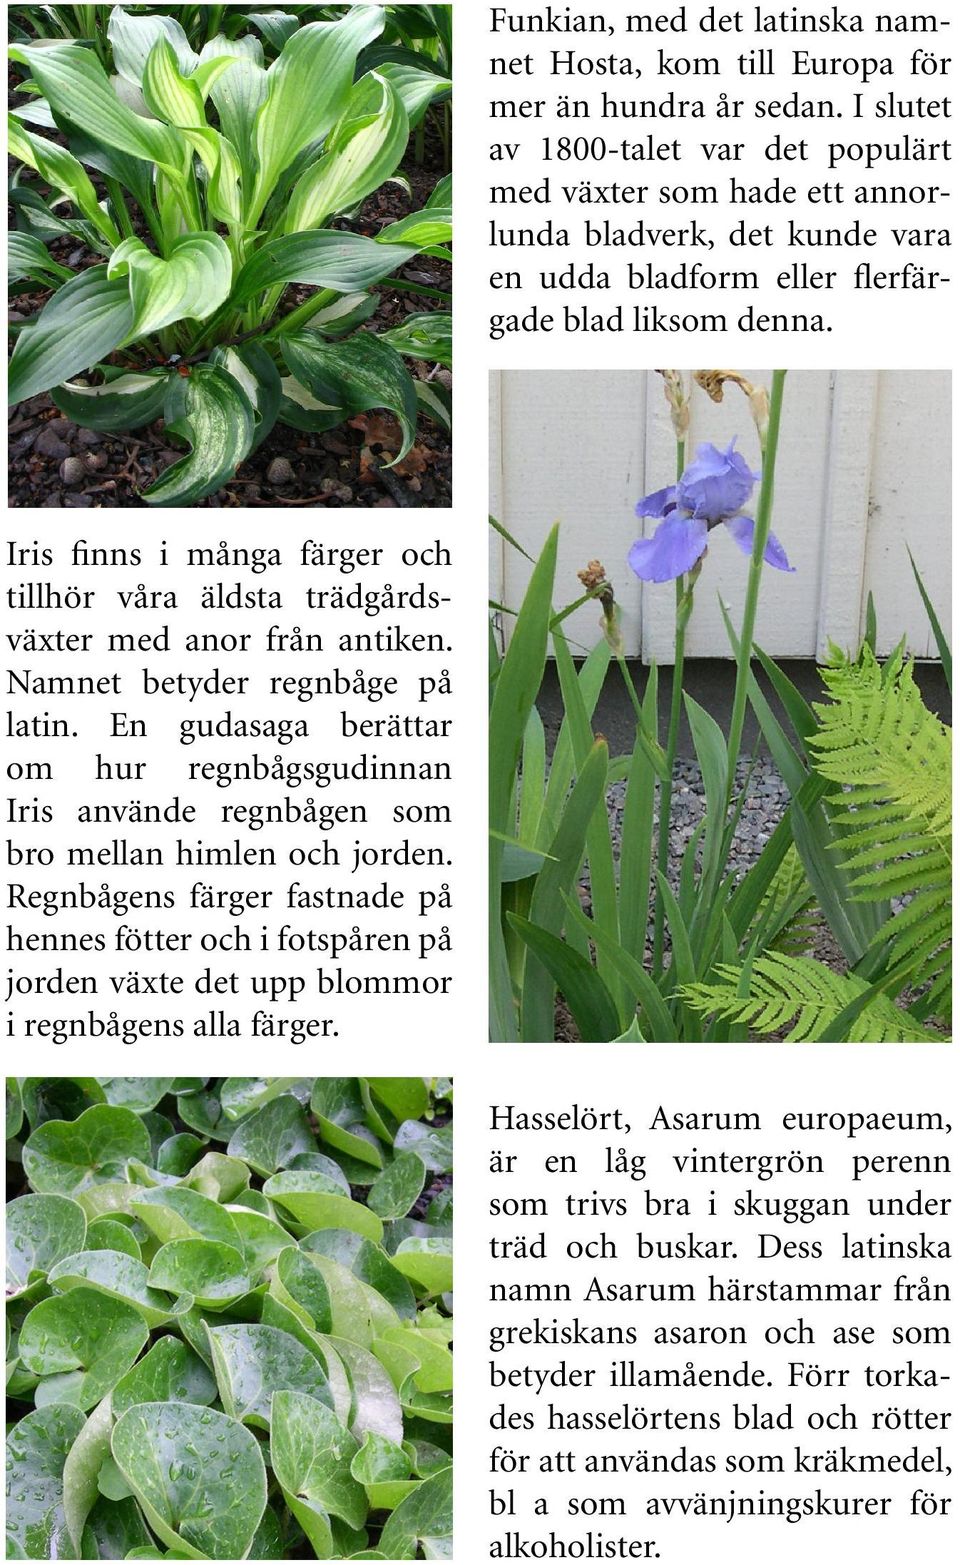 Iris finns i många färger och tillhör våra äldsta trädgårdsväxter med anor från antiken. Namnet betyder regnbåge på latin.